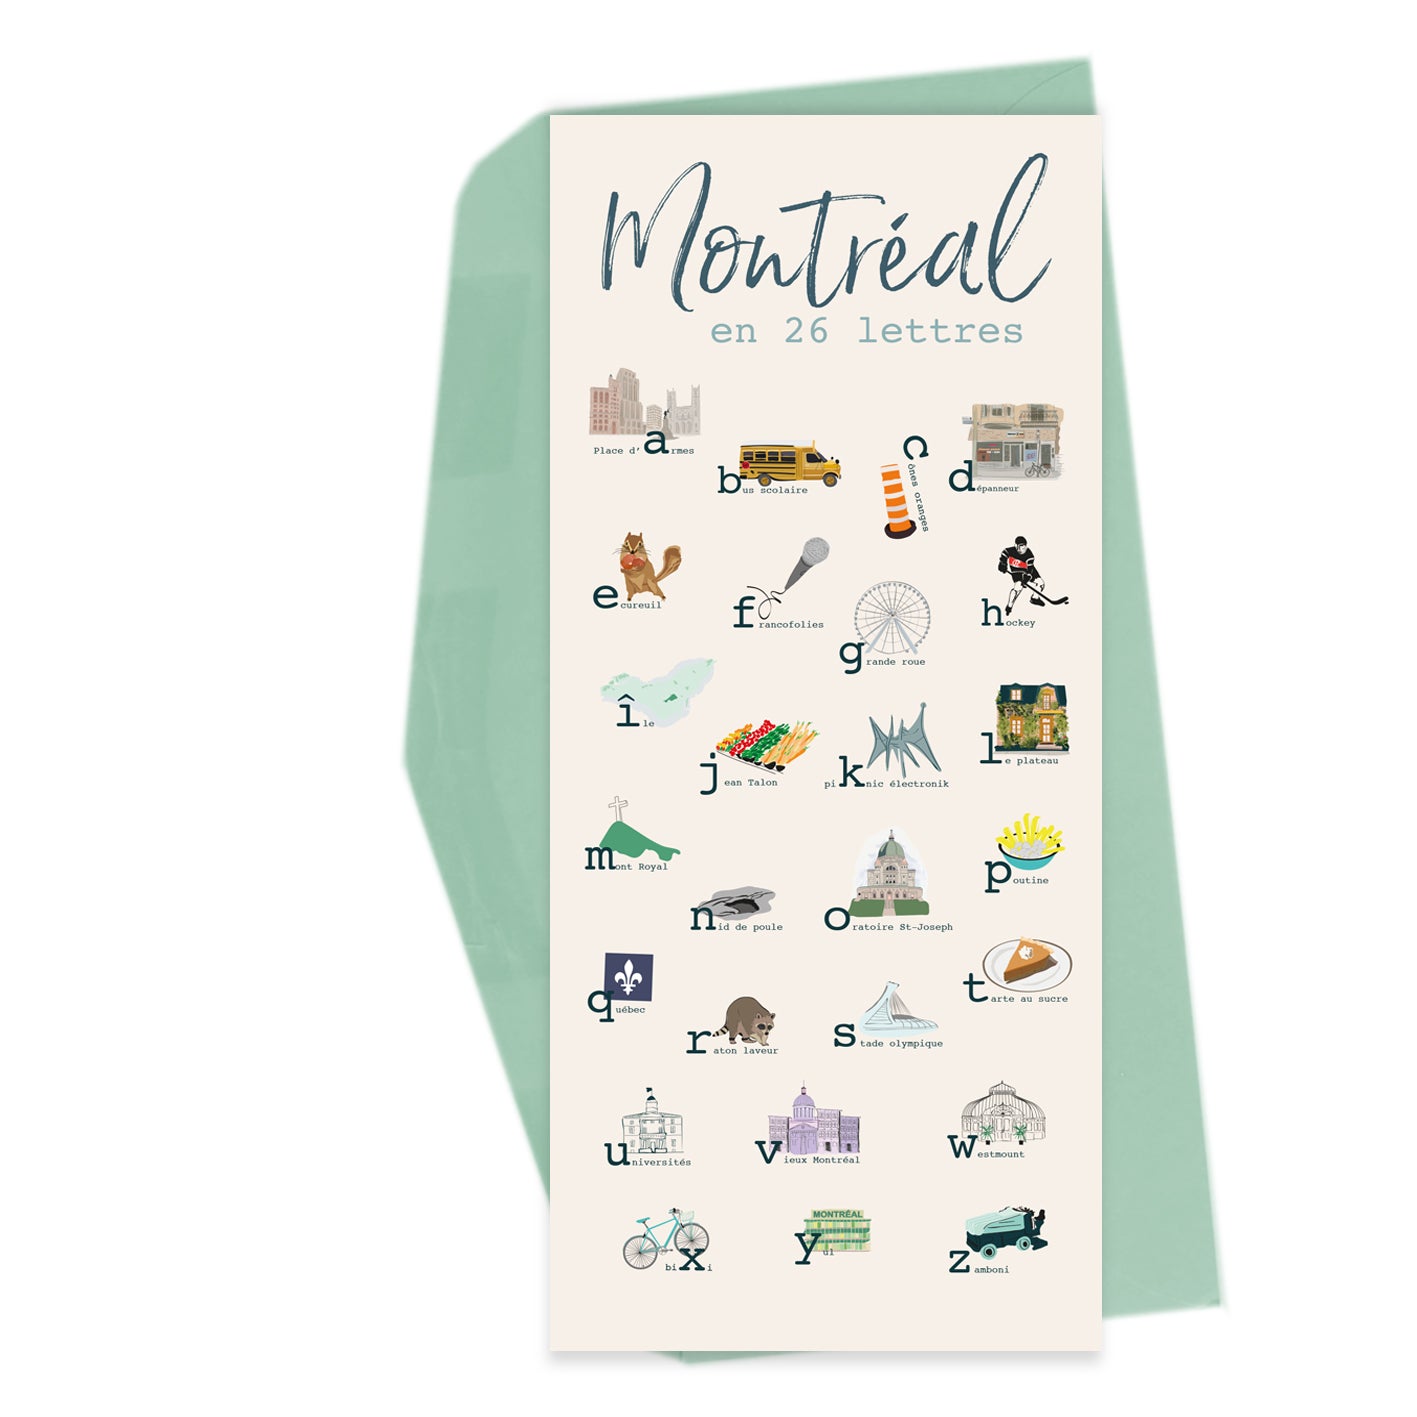 From Montréal - 26 letters